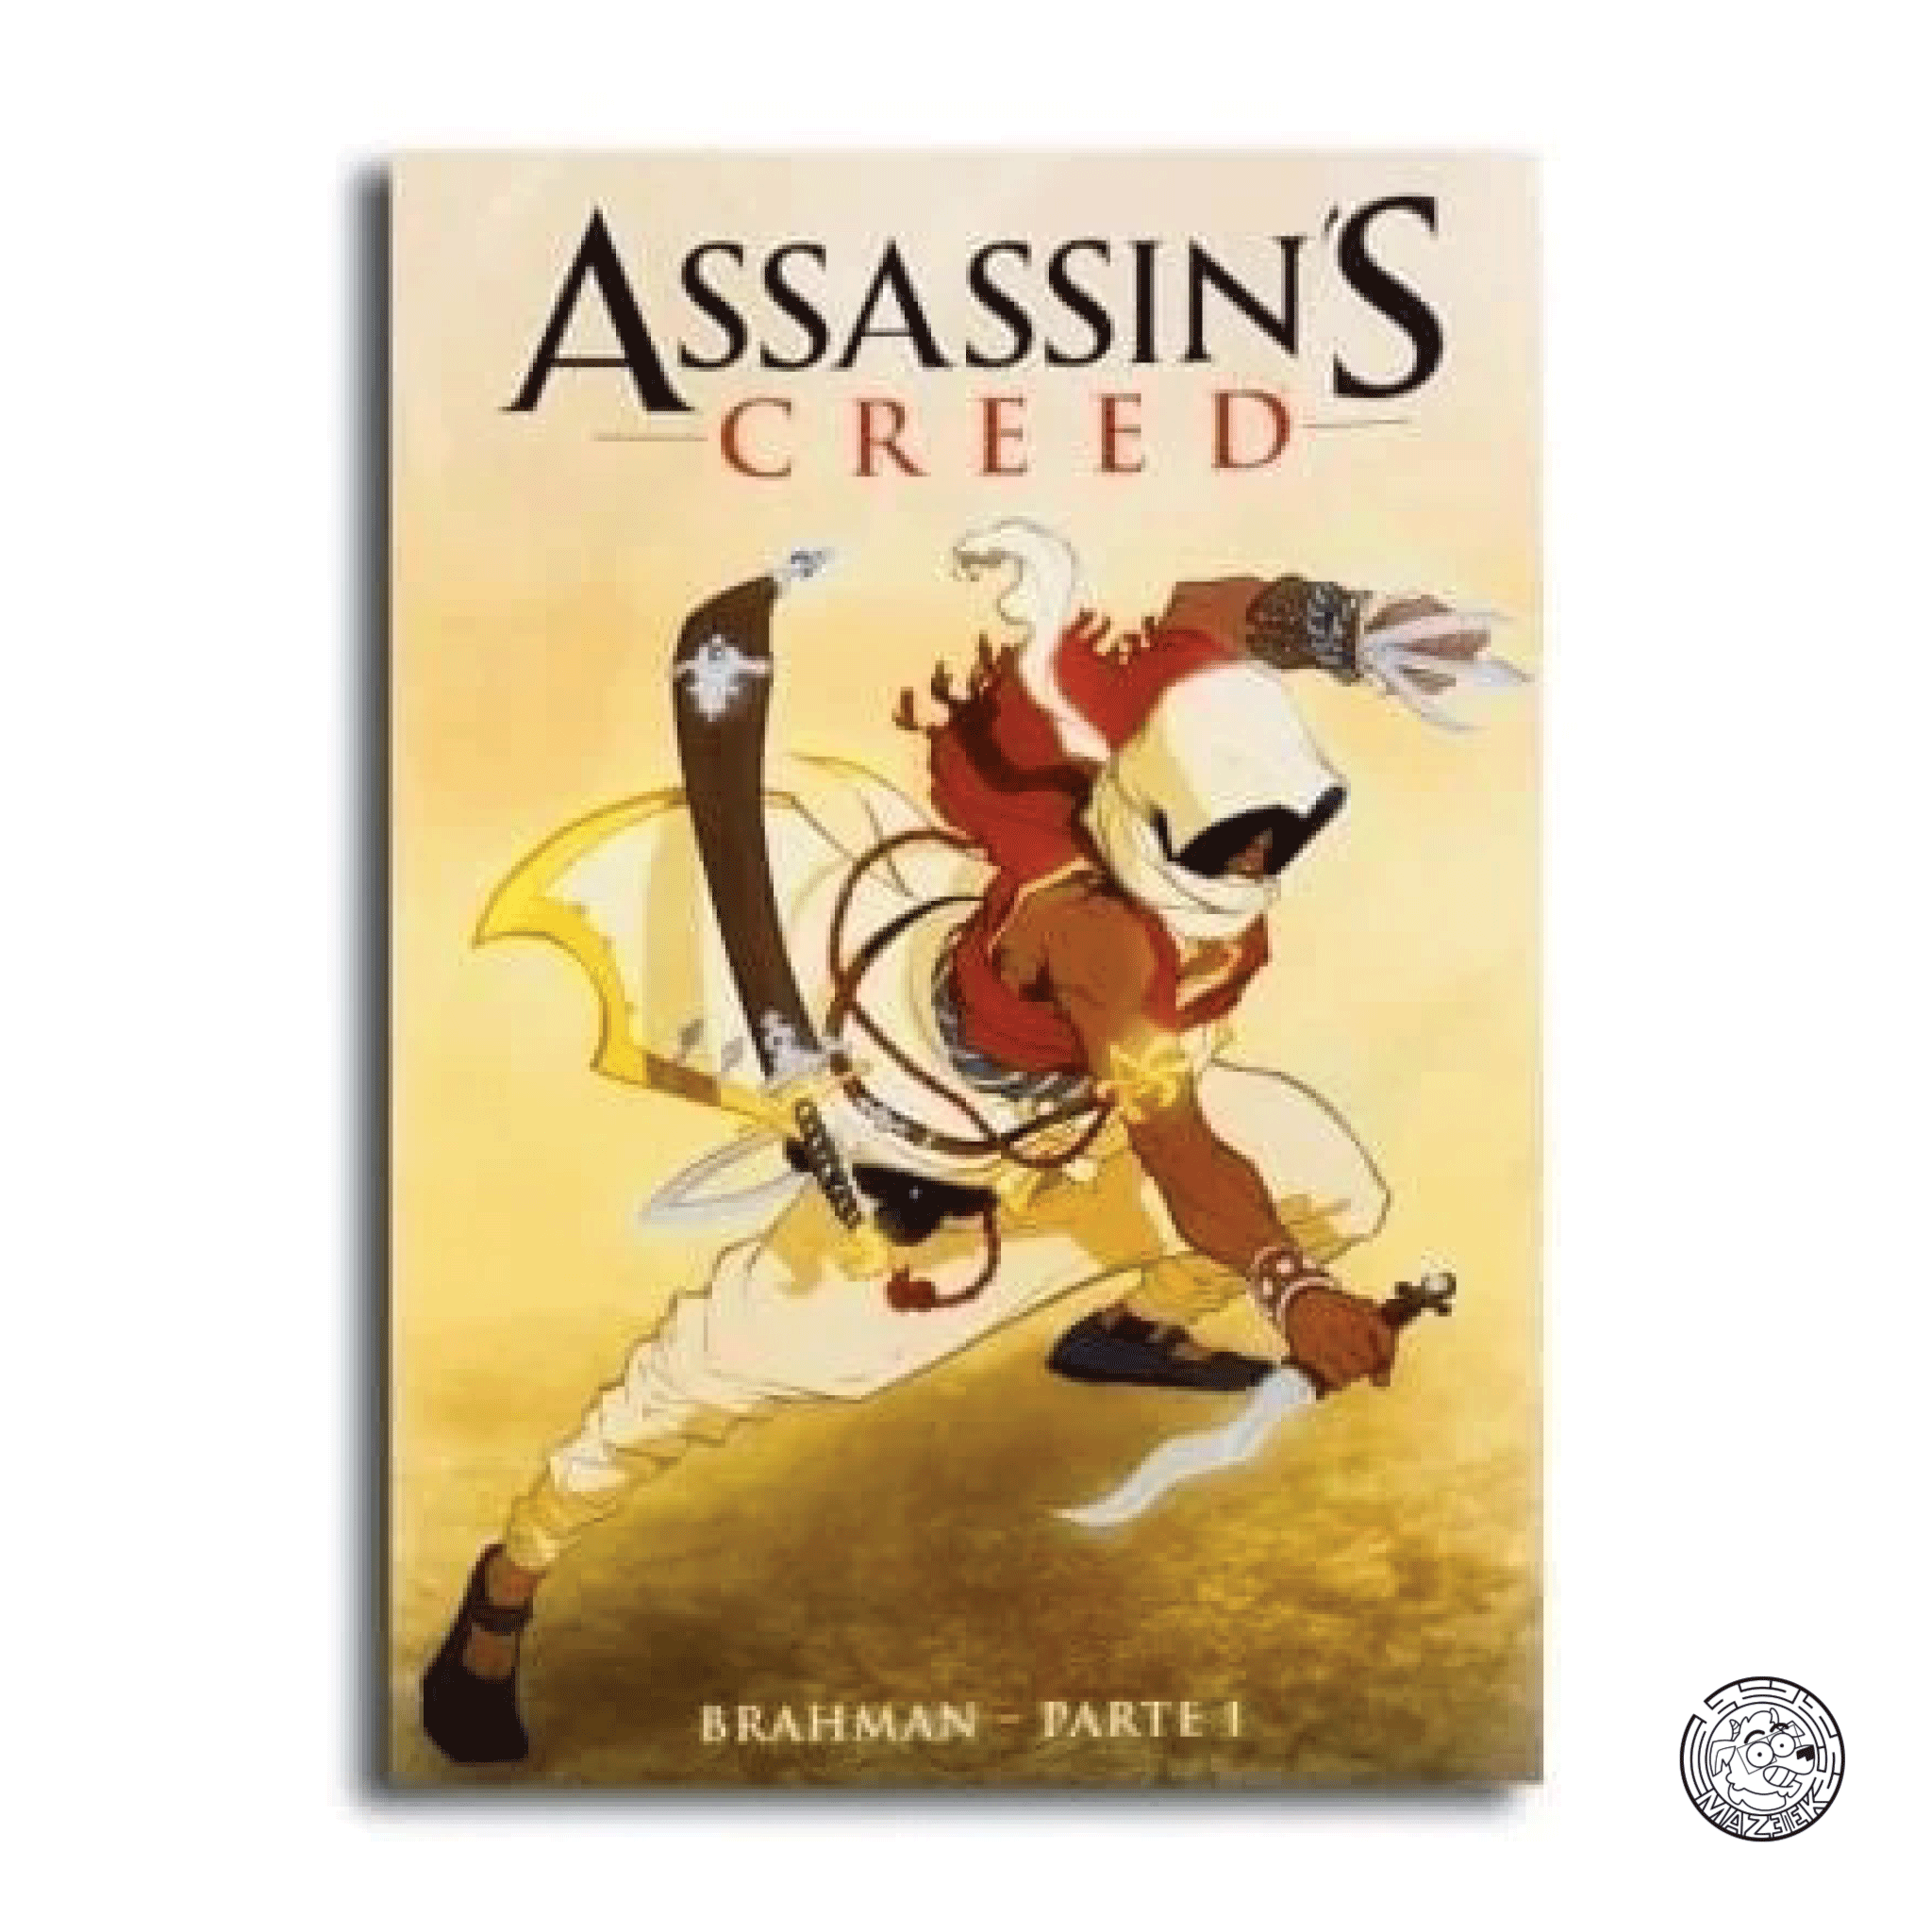 Assassin's Creed (Corriere dello Sport) Brahman - Parte 1